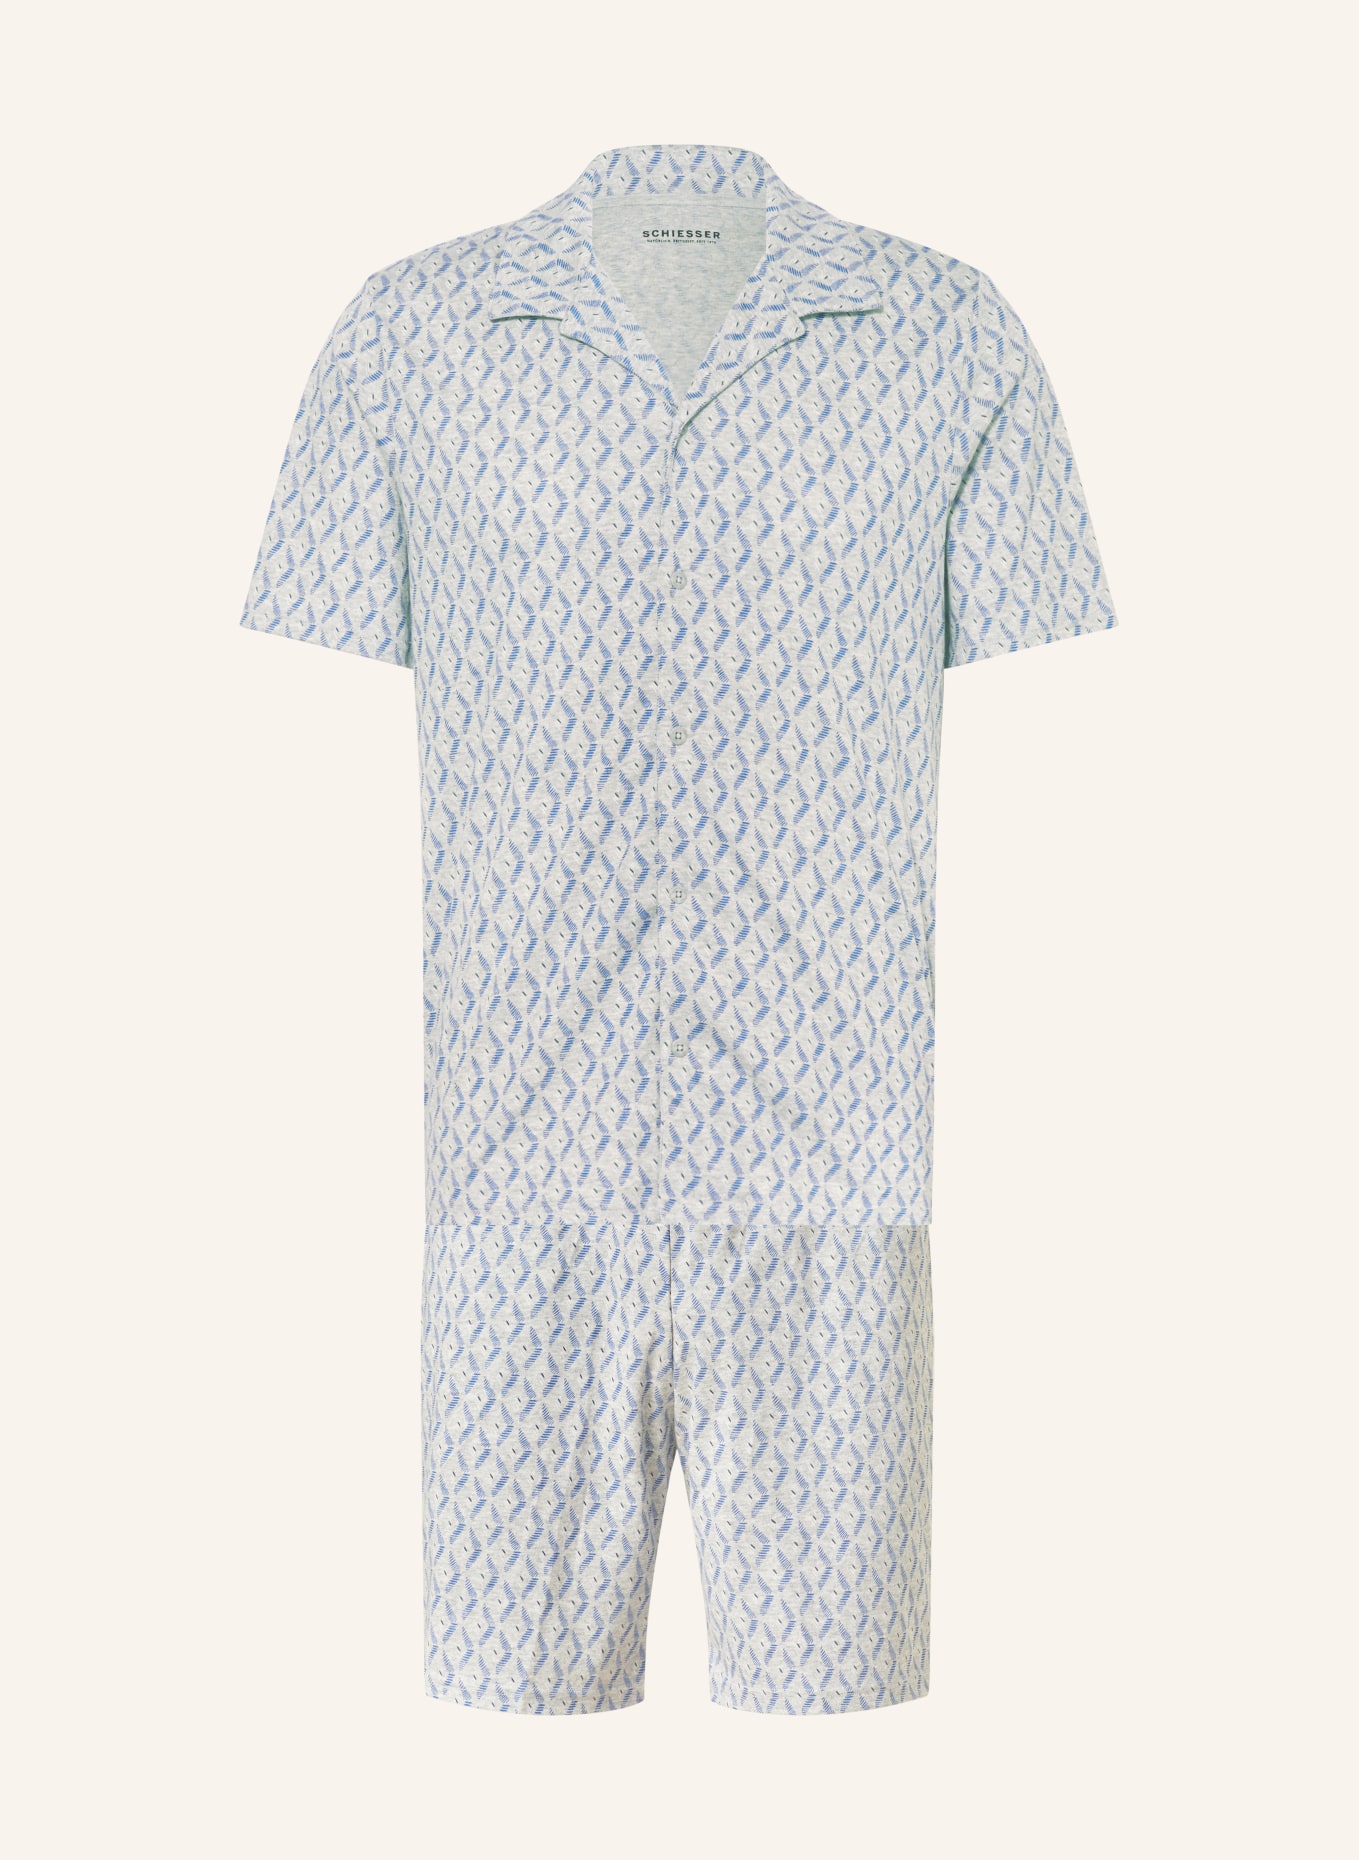 SCHIESSER Shorty pajamas, Color: GRAY/ BLUE (Image 1)